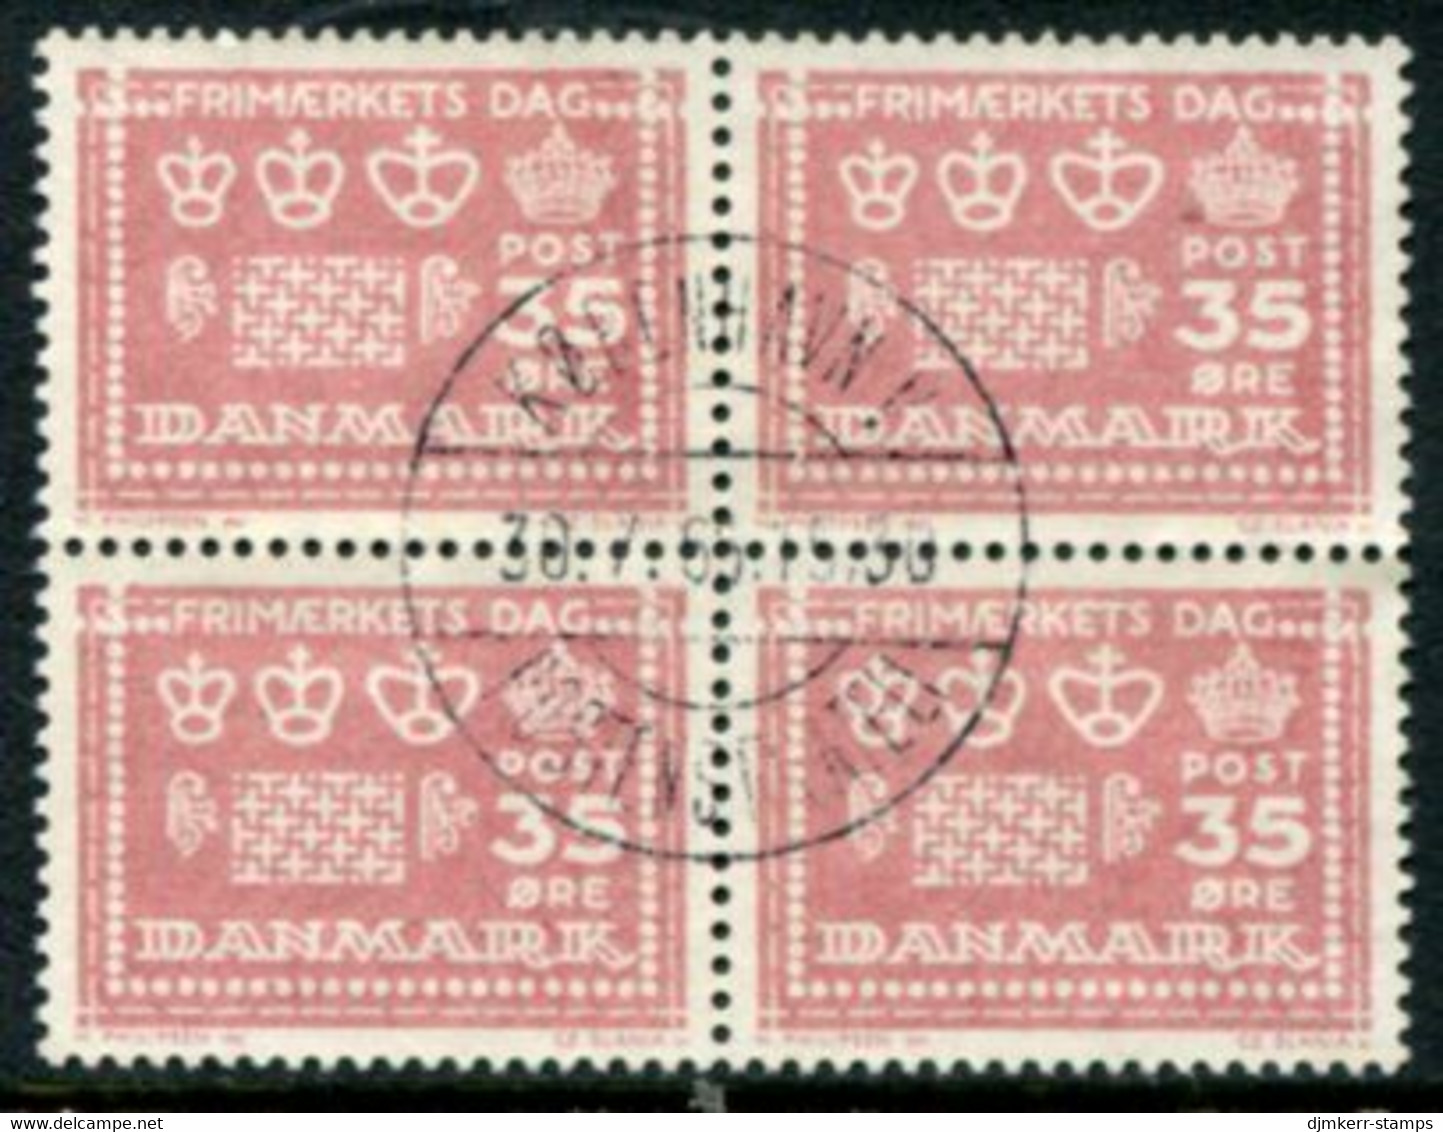 DENMARK 1964 Stamp Day Block Of 4 Used   Michel 425y - Gebraucht